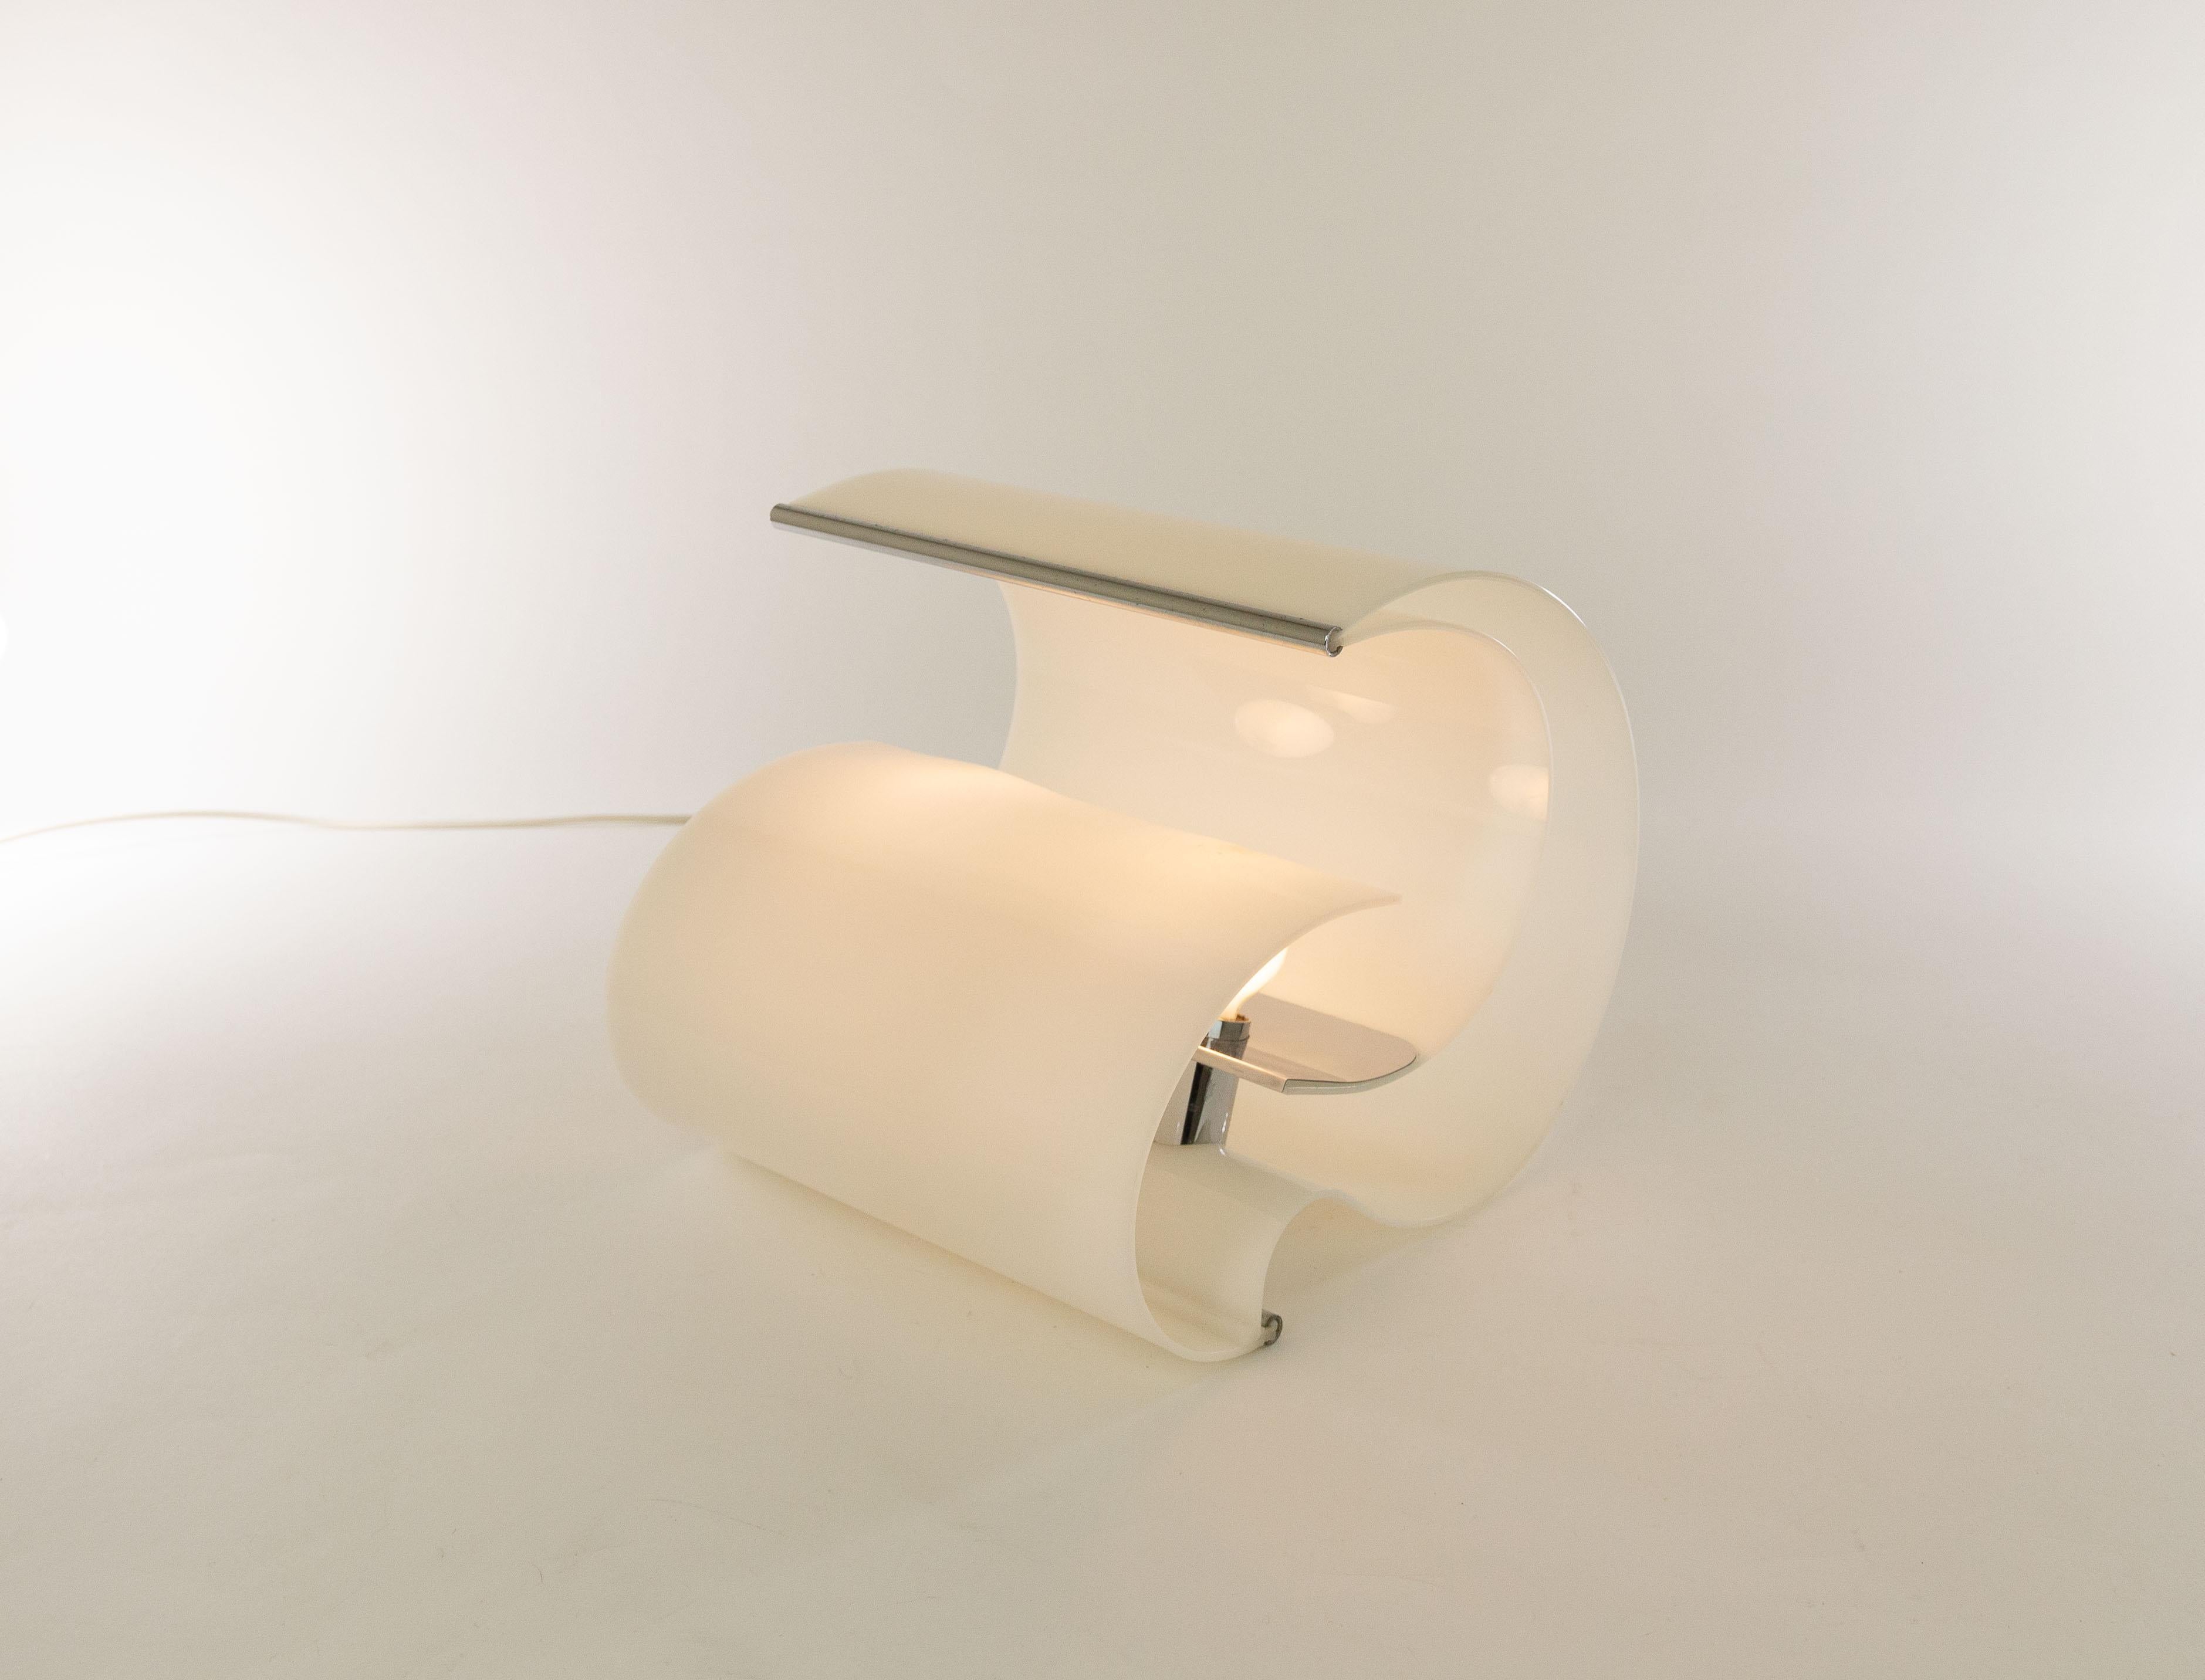 Lampe de table modèle 8105 conçue par Franco Mazzucchelli Tartaglino en 1969 et produite par Stilnovo.

Franco Mazzucchelli Tartaglino est célèbre pour ses meubles en plastique gonflables. Pour cette lampe, il a également utilisé son matériau